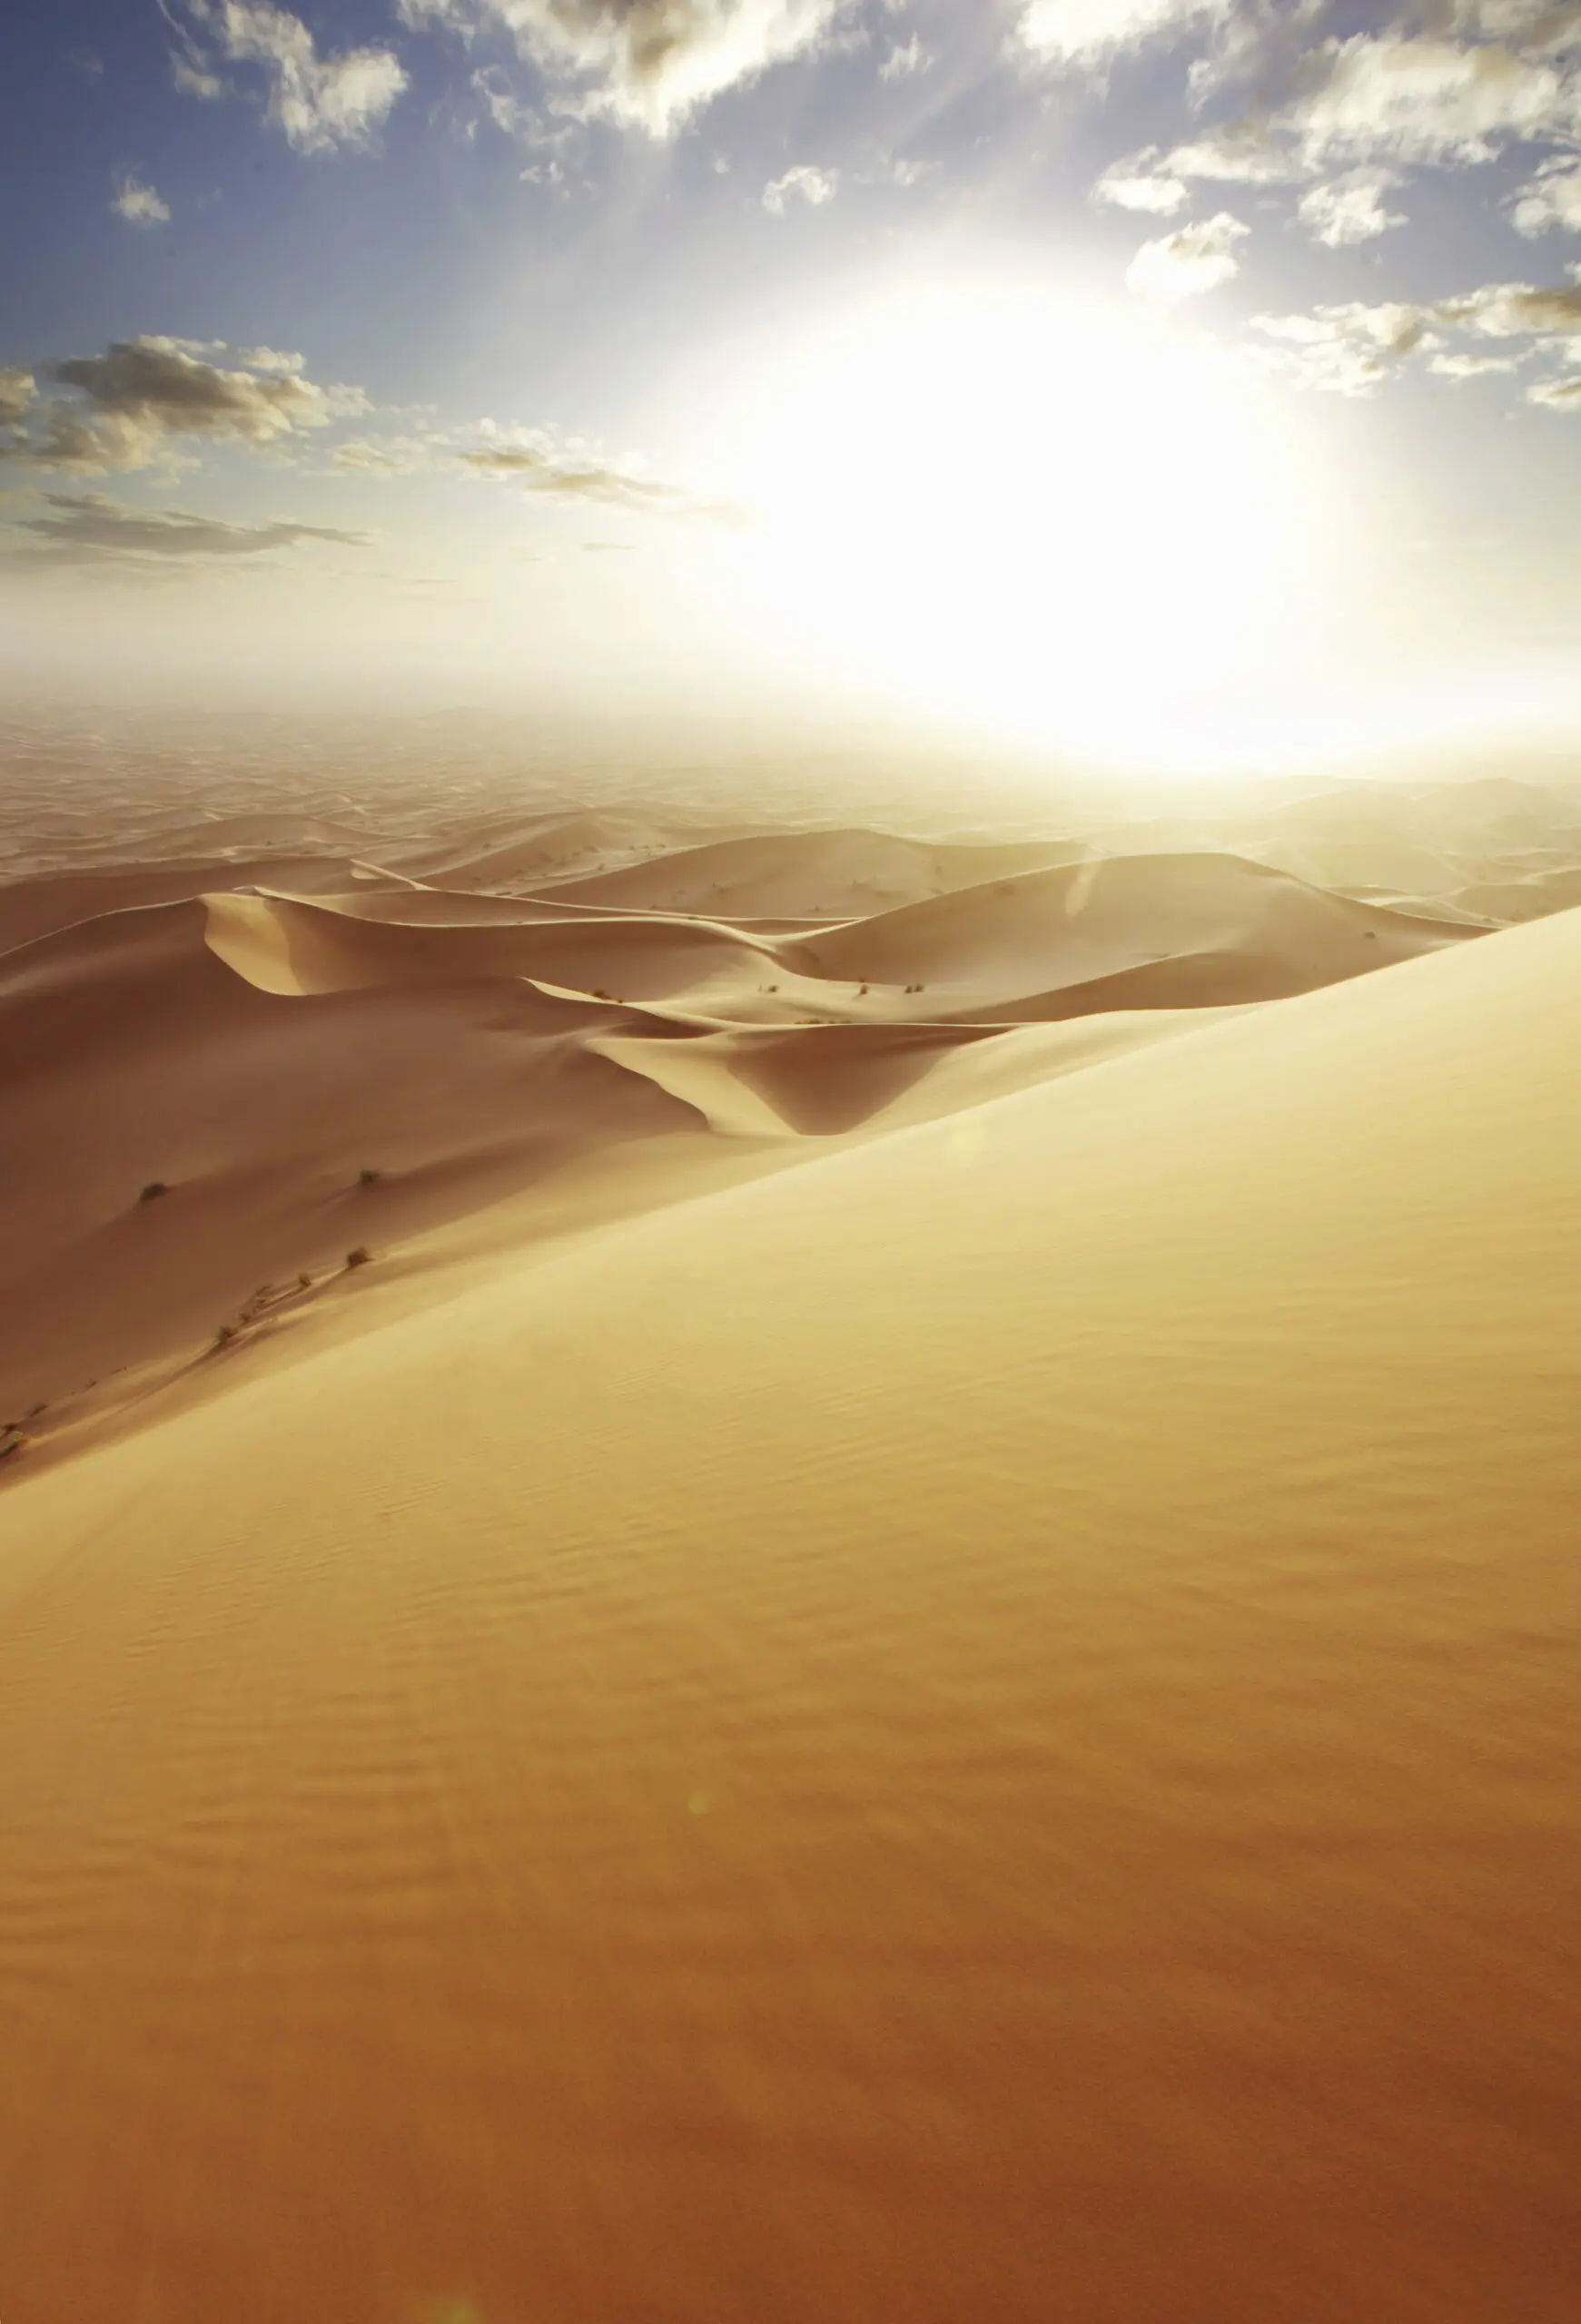 Wandbild (4638) TC – Sanddünenwüste Marokko präsentiert: Kreatives,Details und Strukturen,Natur,Landschaften,Afrika,Wüste,Detailaufnahmen,Luftaufnahmen,Sonstiges Kreatives,Steine,Sonstige Naturdetails,Erde